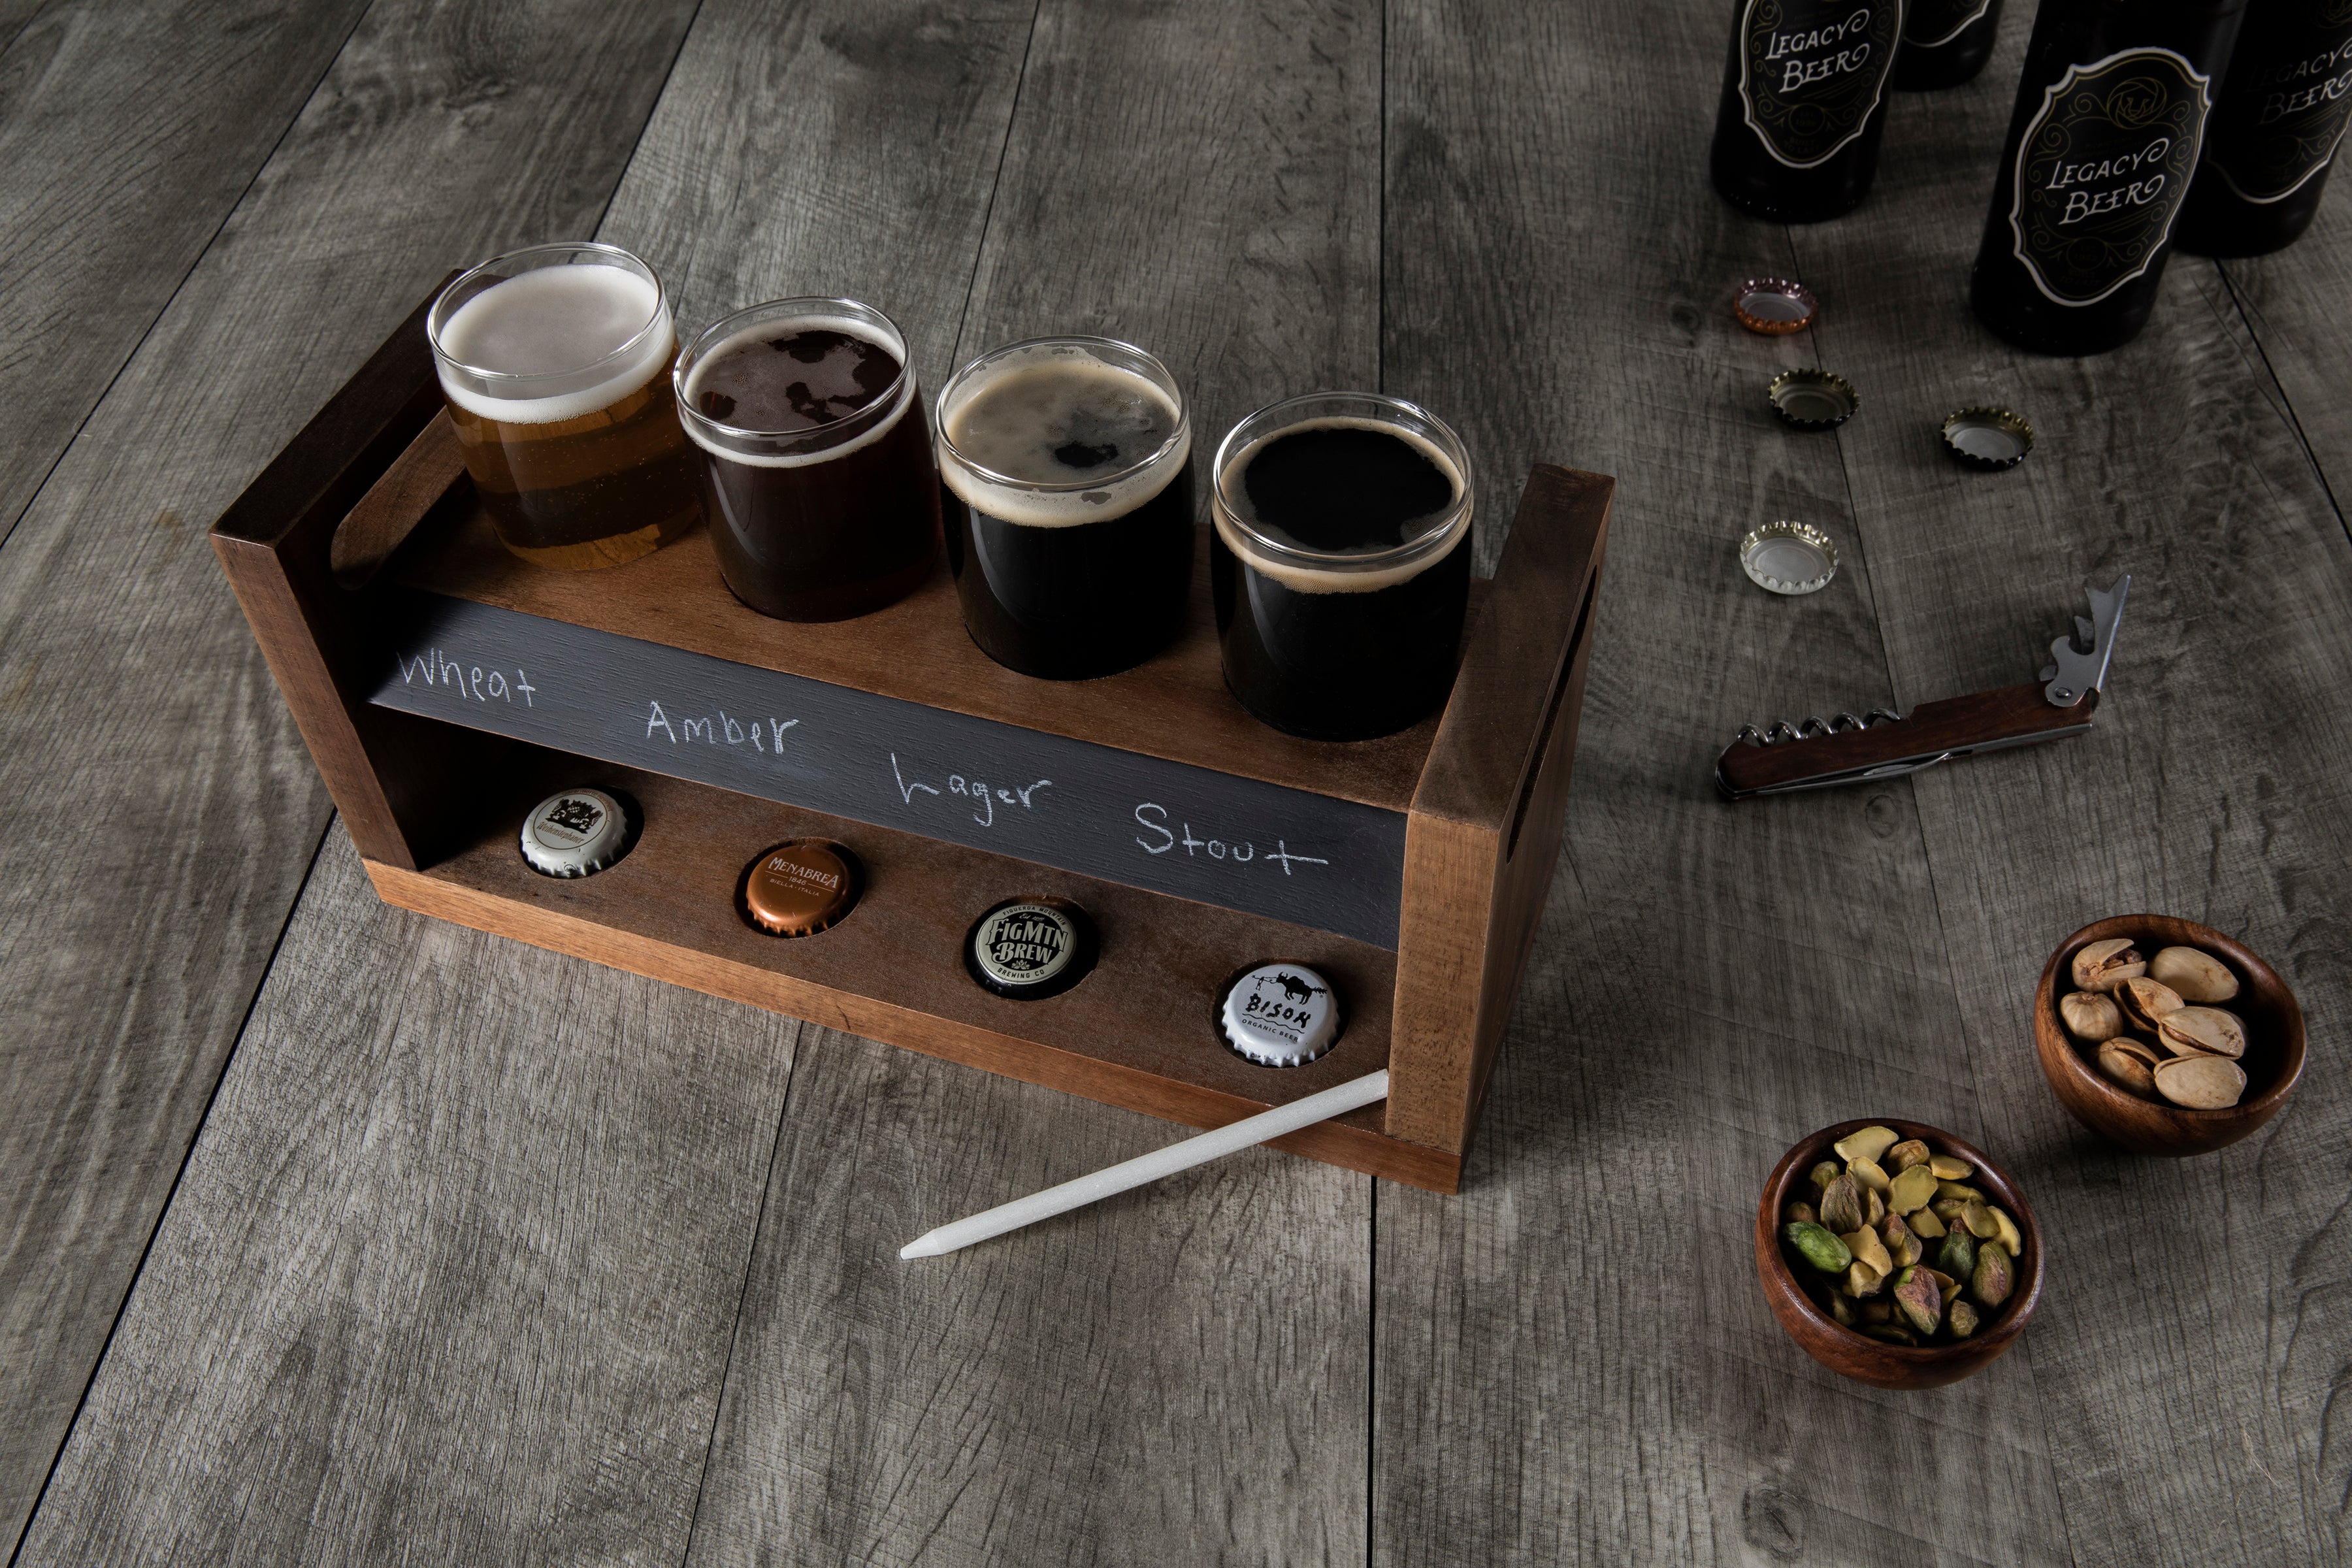 Pittsburgh Steelers - Craft Beer Flight Beverage Sampler